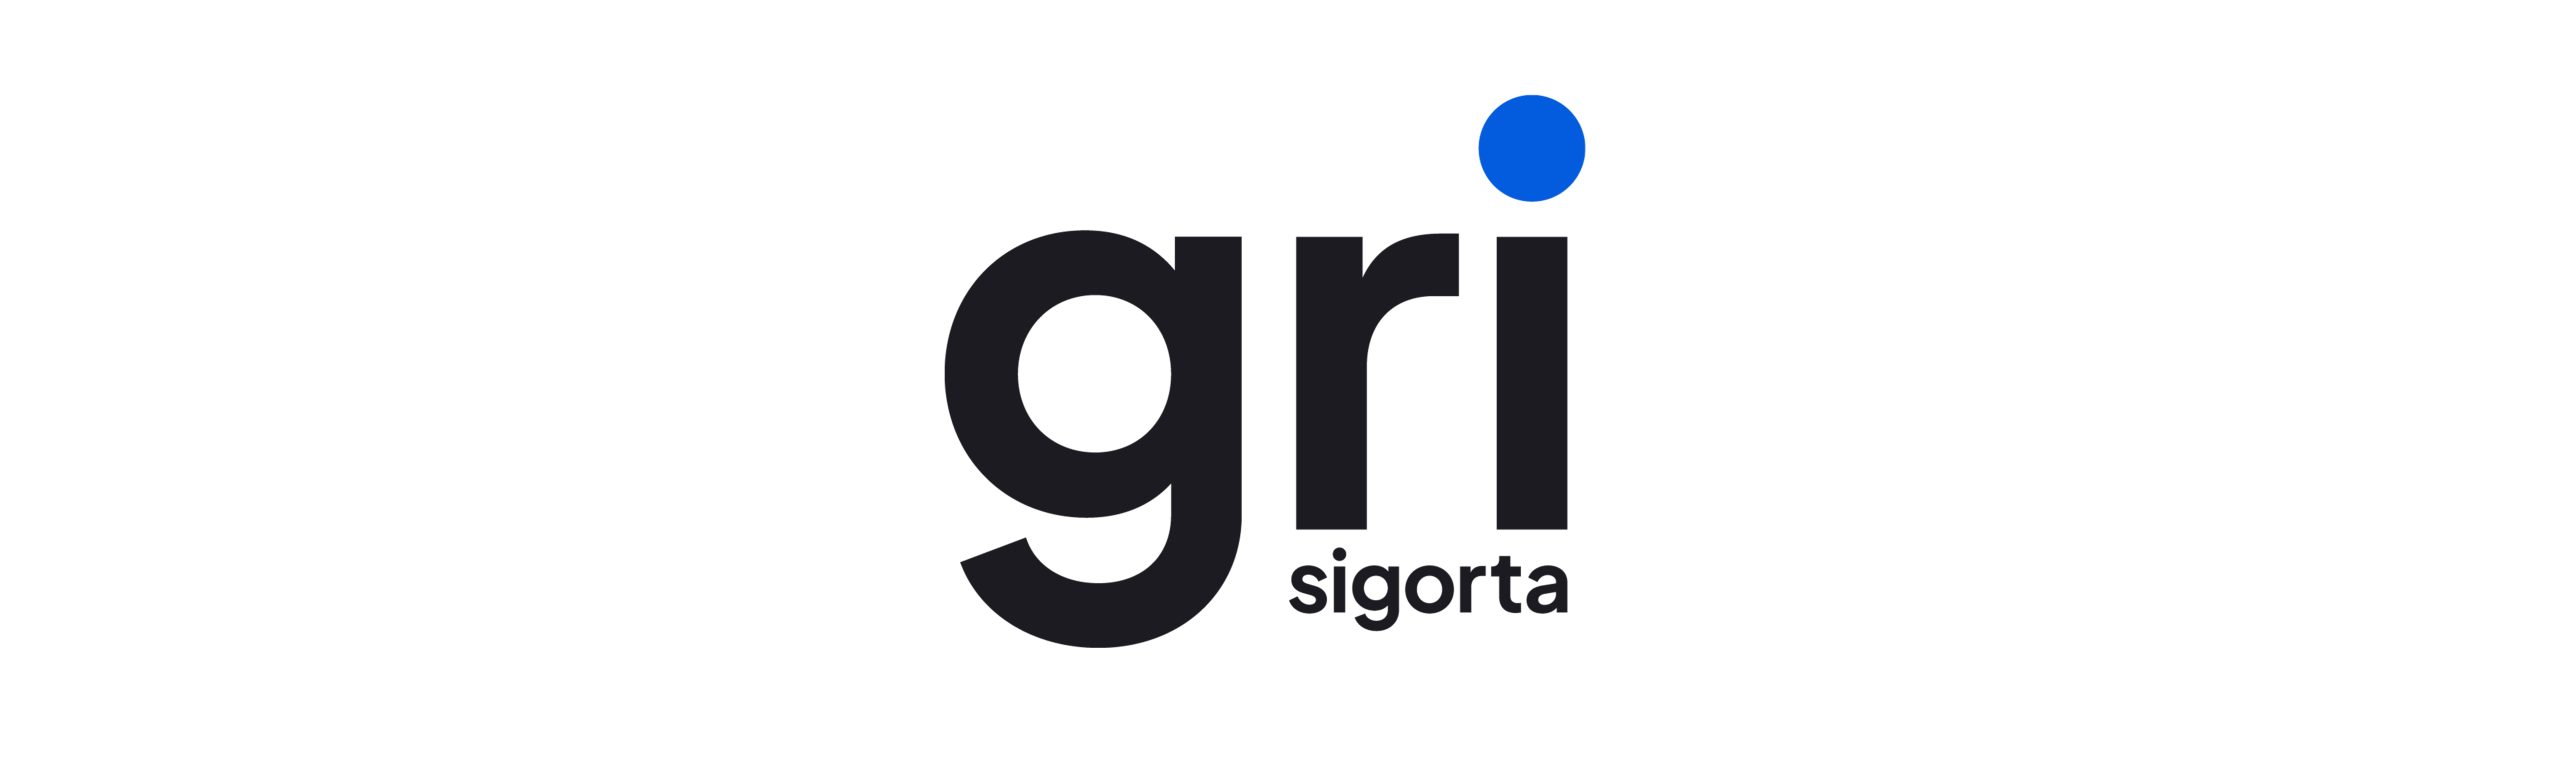 Anlaşmalı Sigortalar_0004_Gri-Logo-1